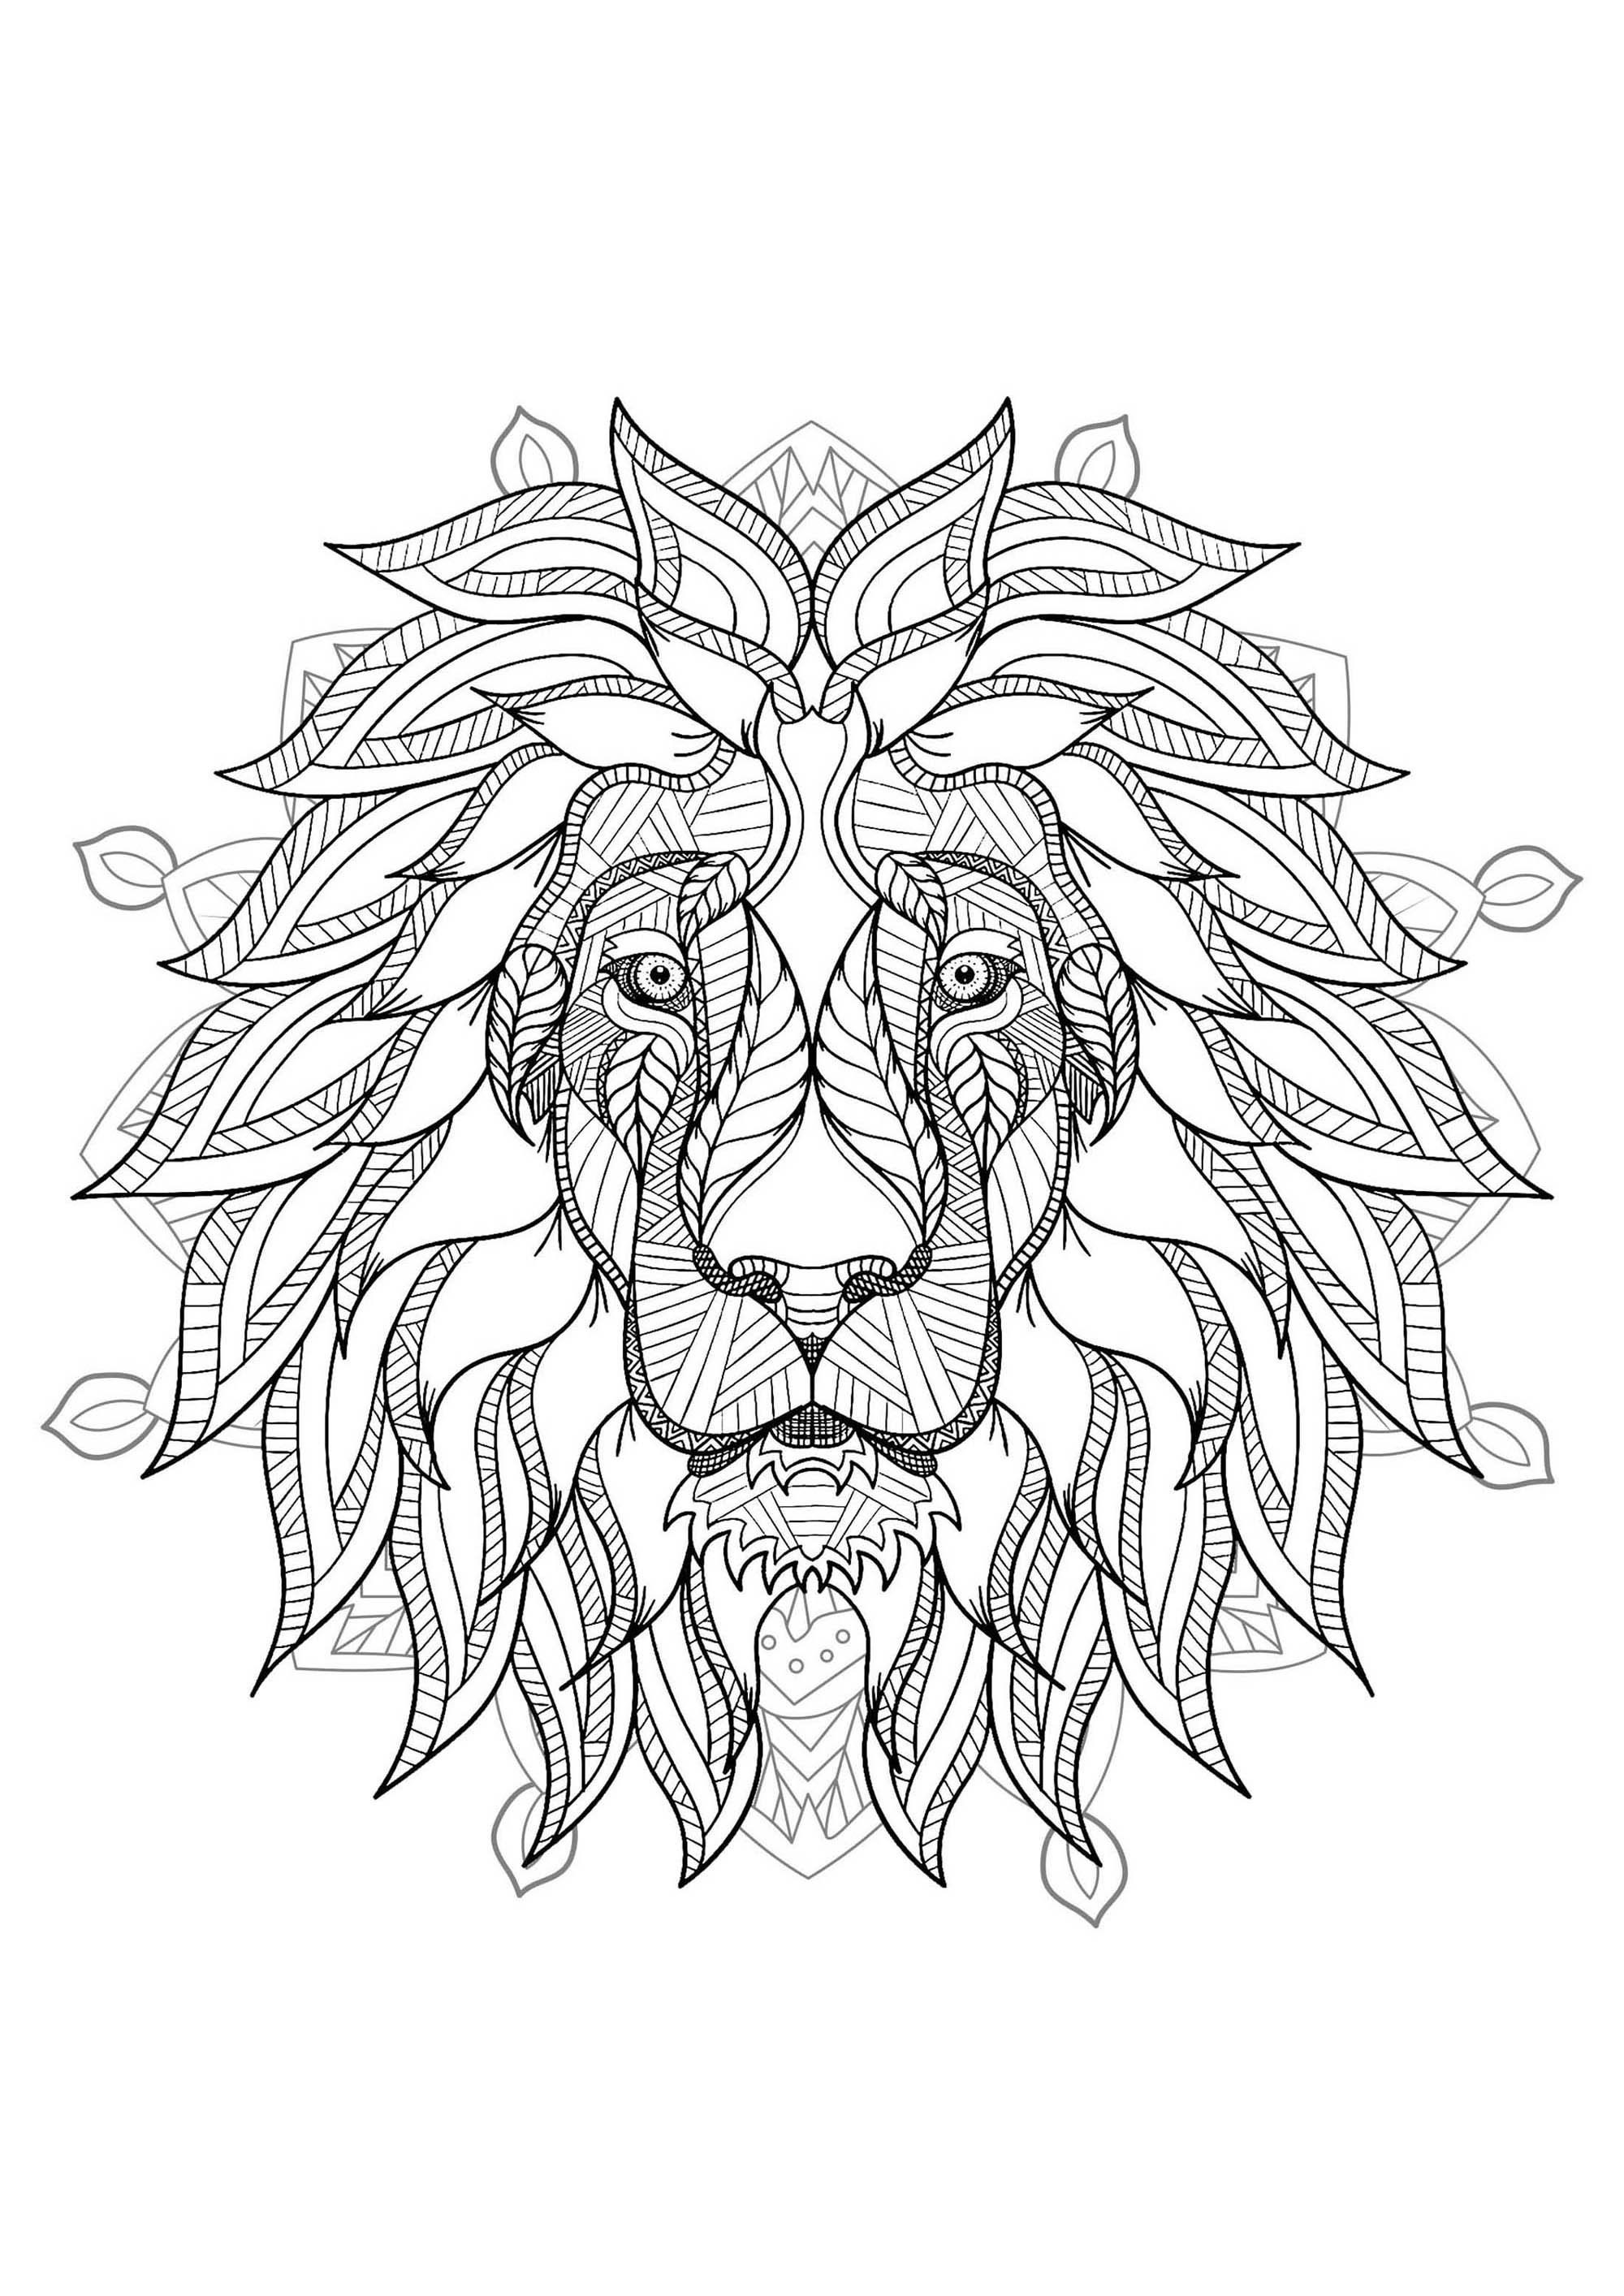 Ein Mandala mit dem König der Tiere: dem Löwen, für diejenigen, die es vorziehen, konkrete und lebendige Elemente in Farbe umzusetzen.